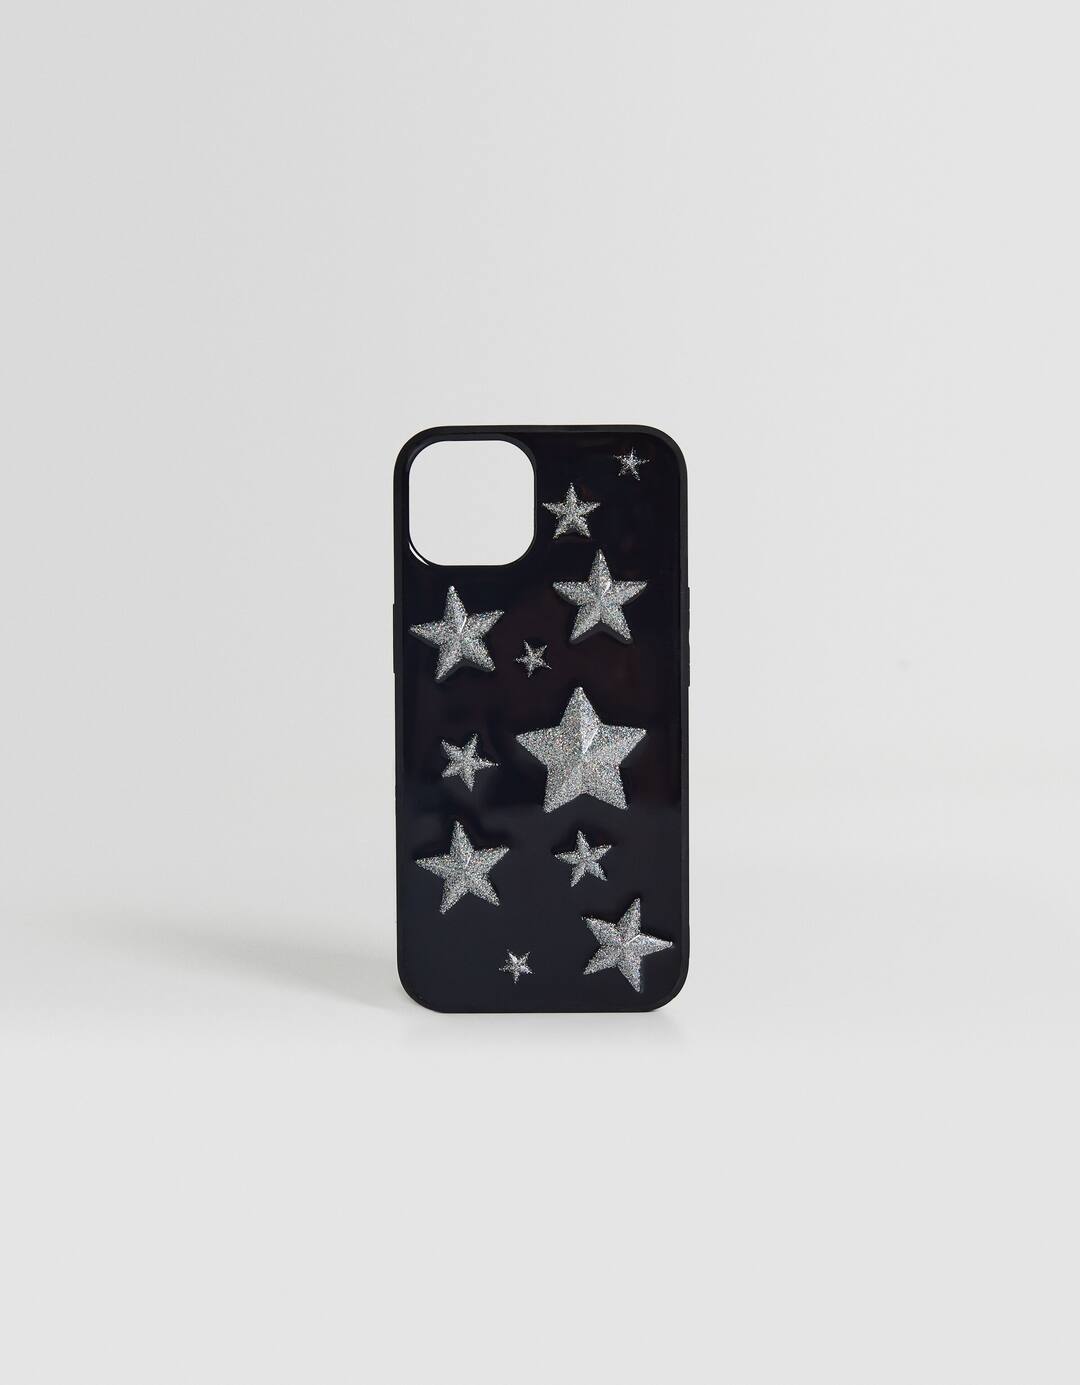 Shiny iPhone case